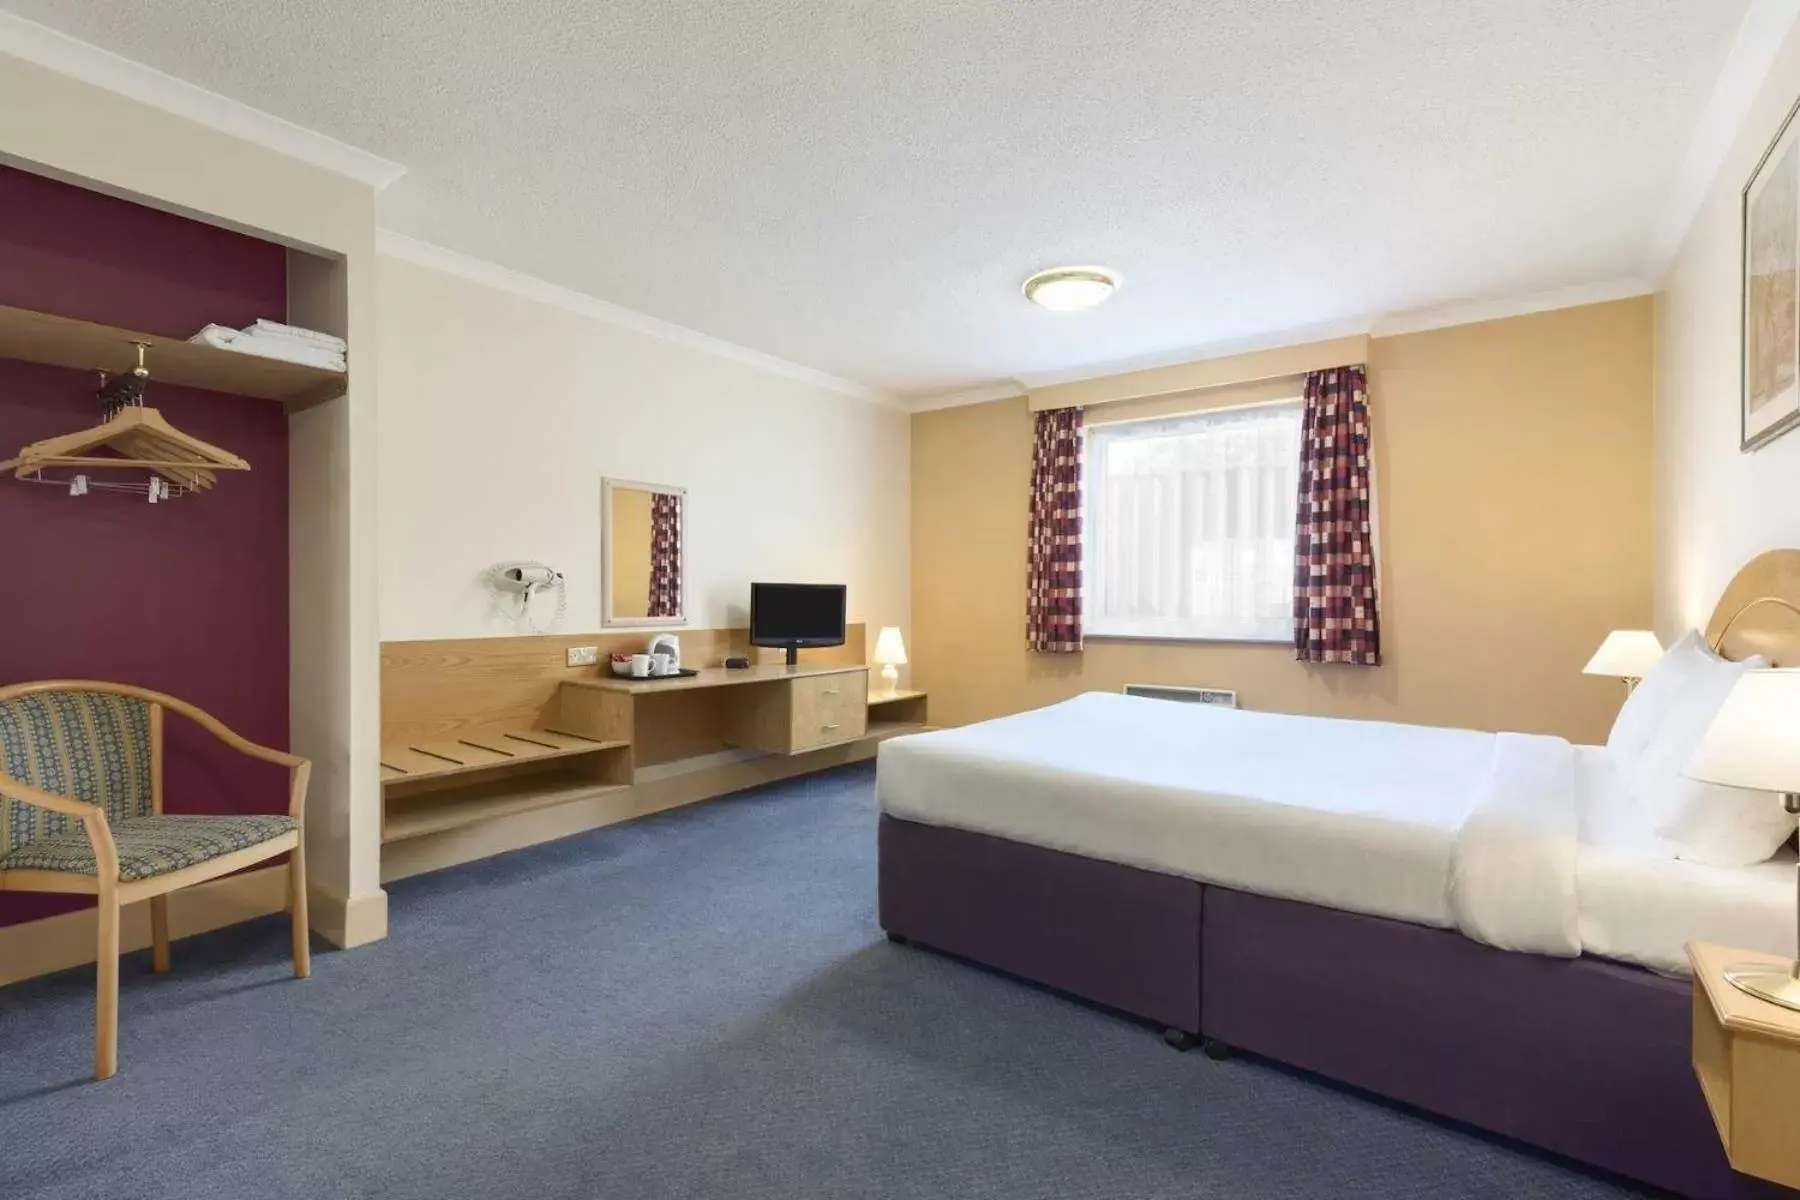 Bedroom, Bed in Days Inn Watford Gap